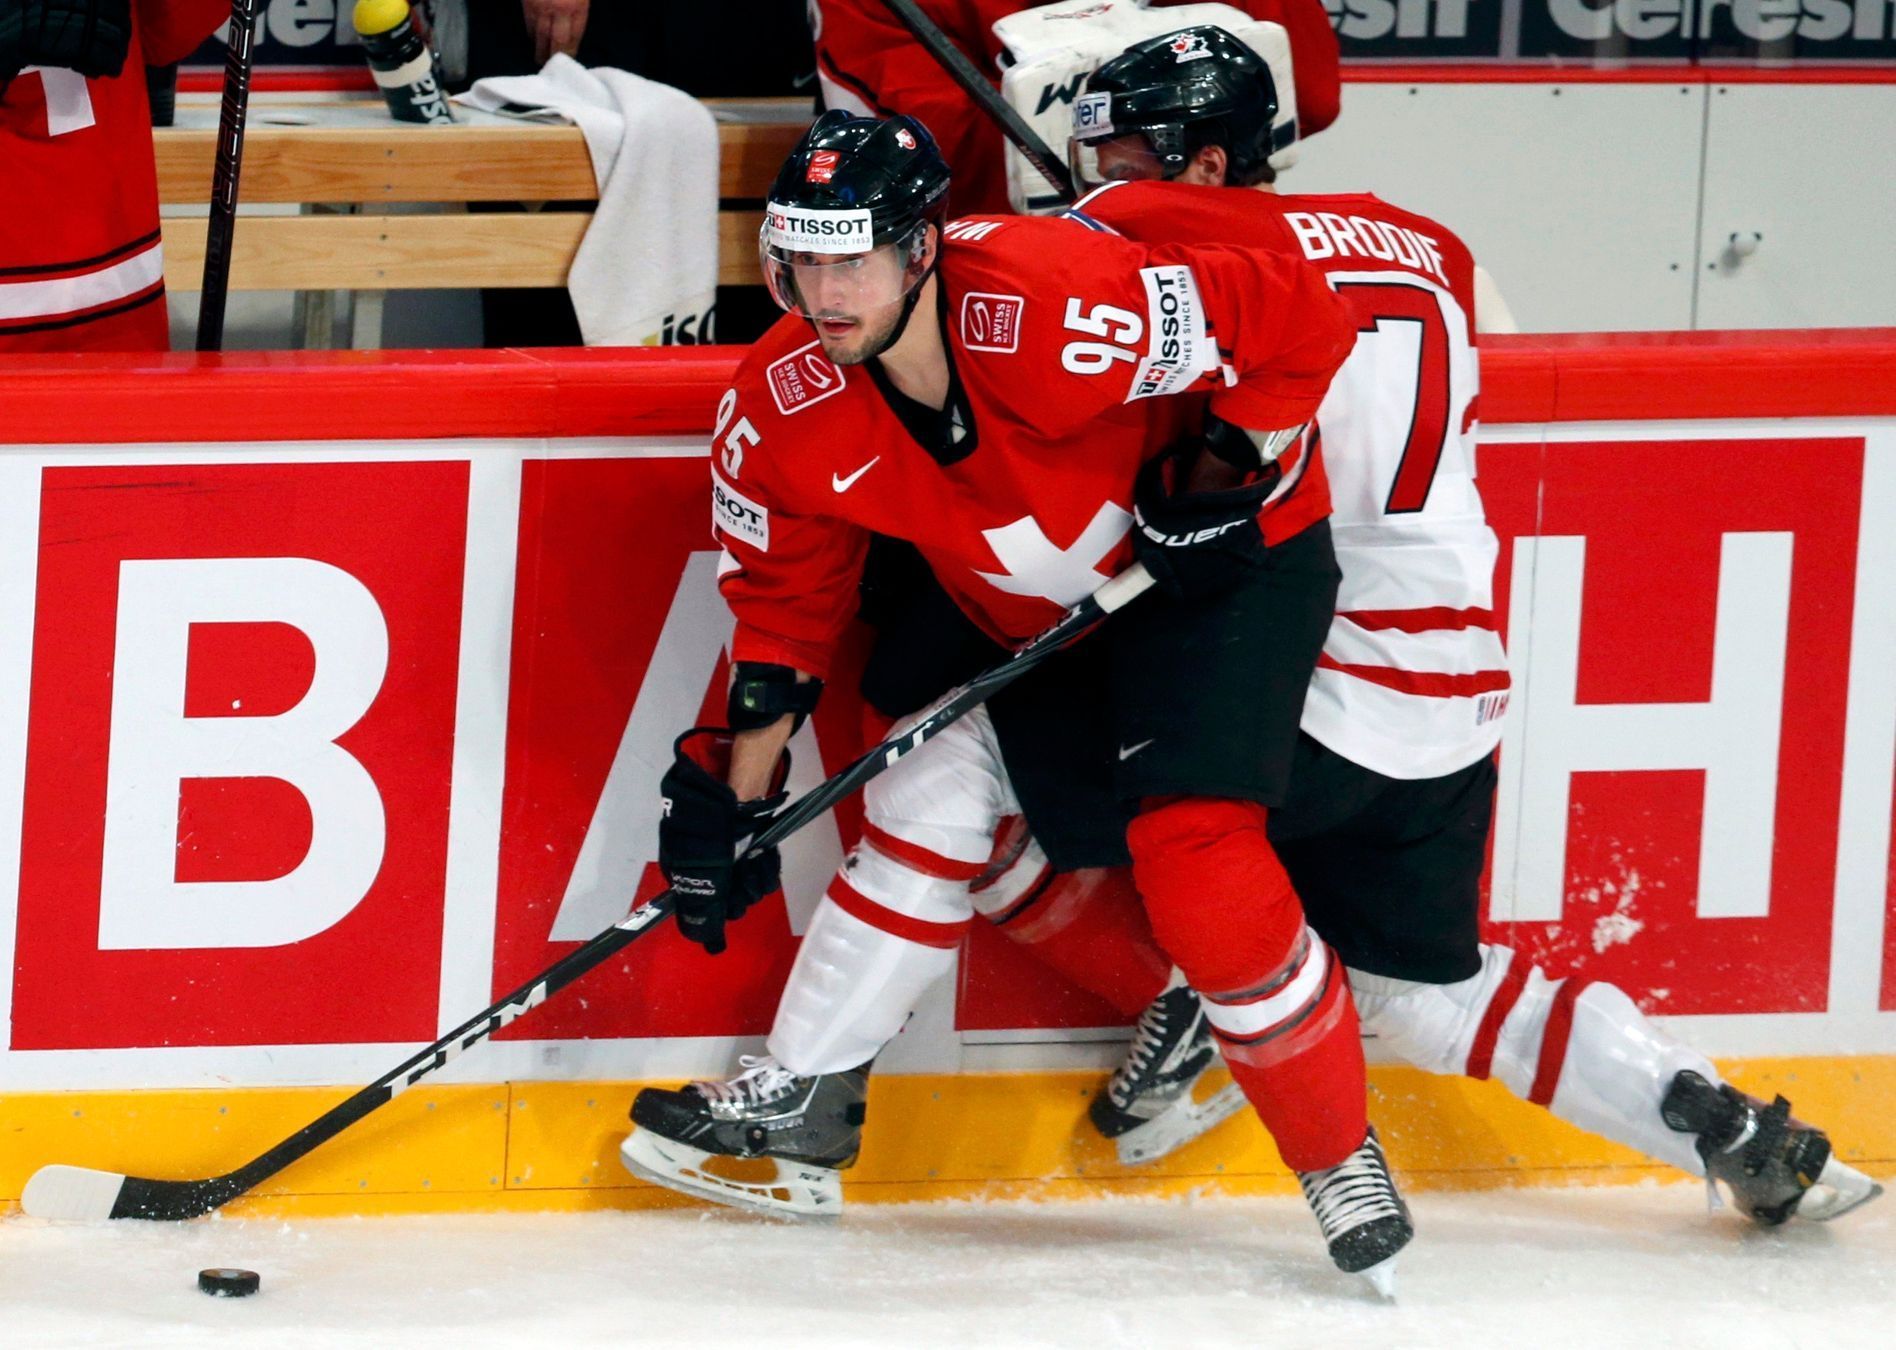 MS v hokeji 2013, Kanada - Švýcarsko: T.J. Brodie  - Julian Walker